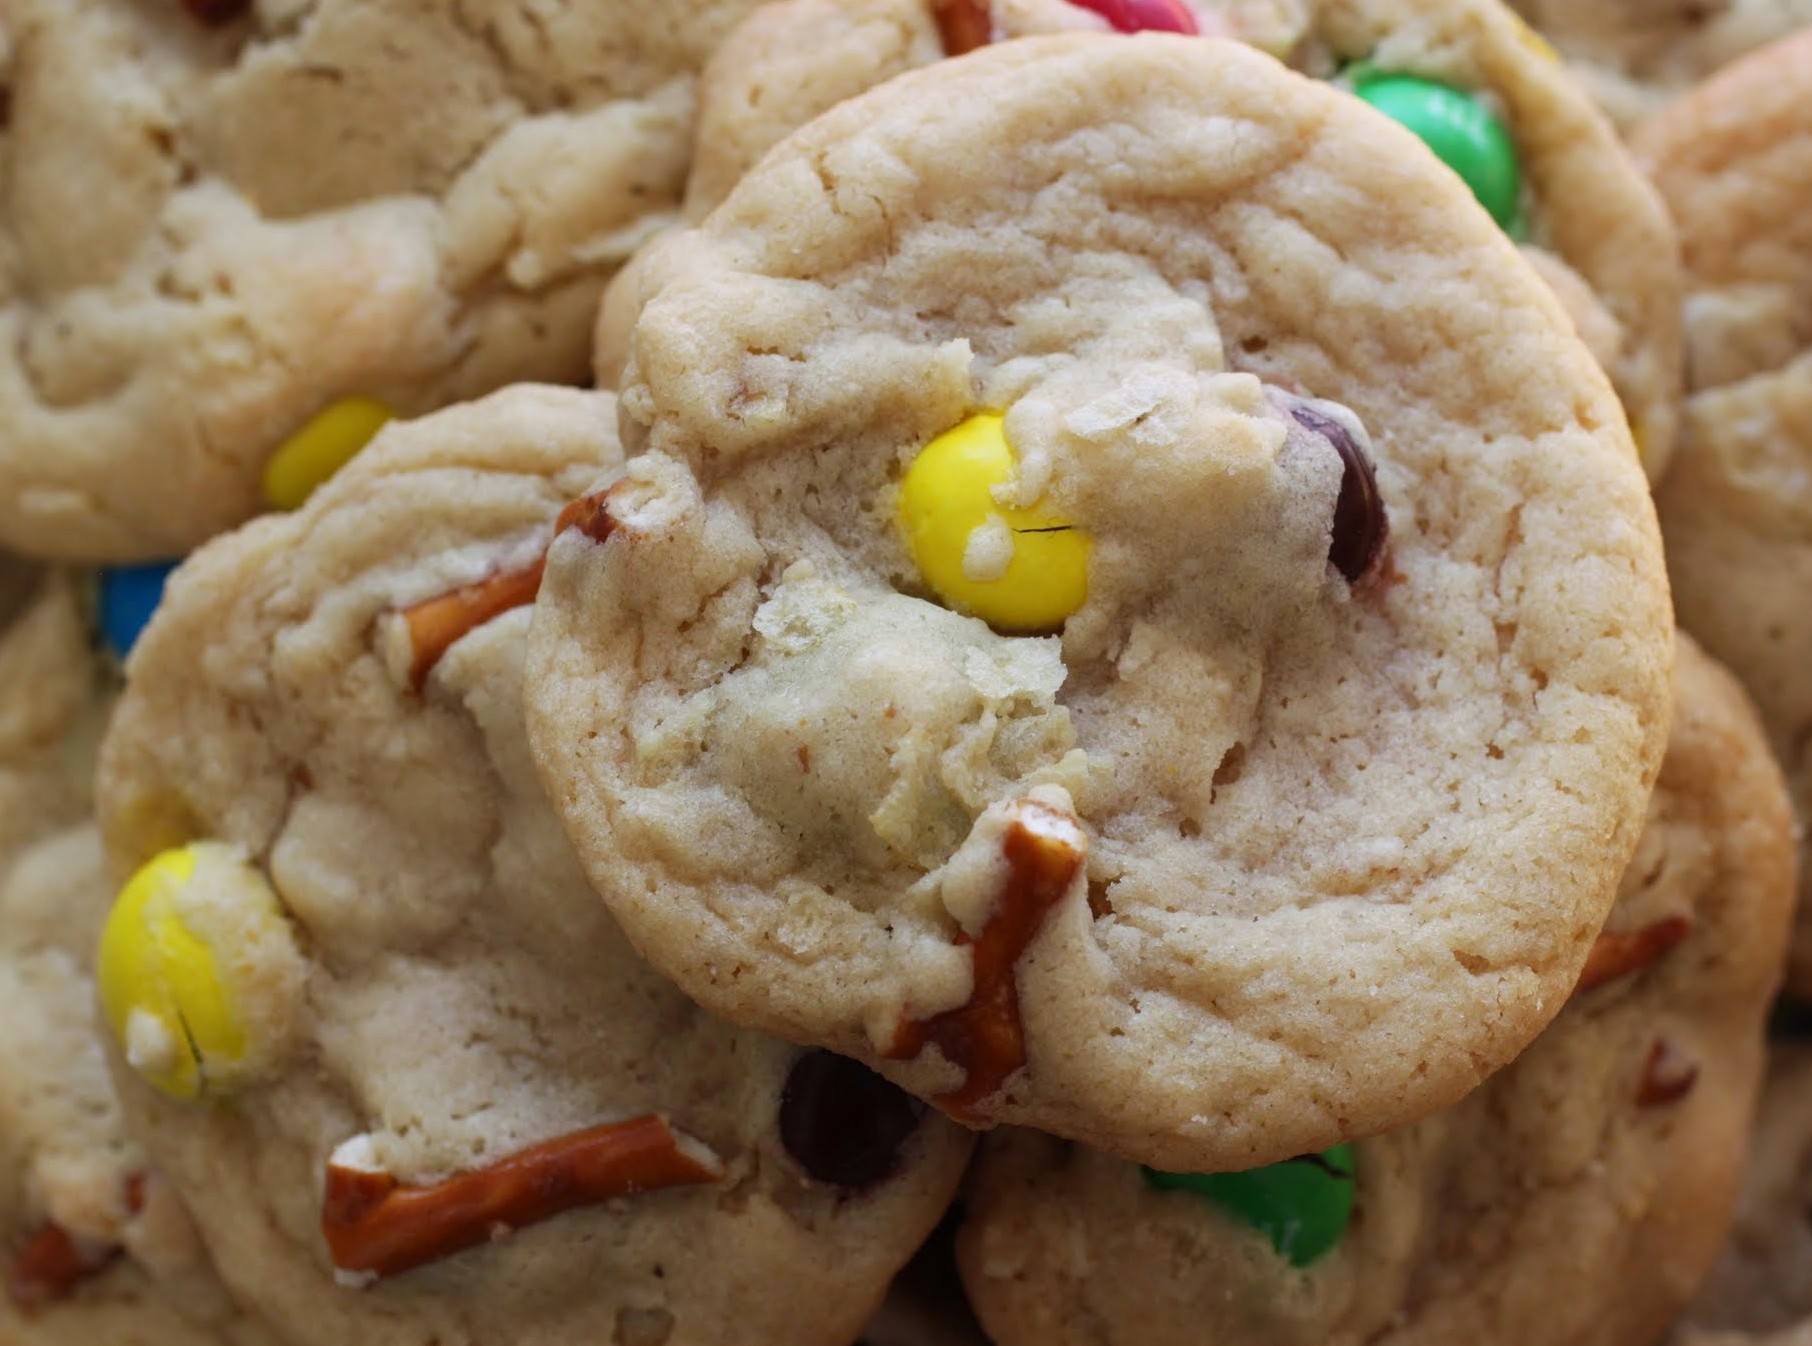 Sweet N' Salty Cookies